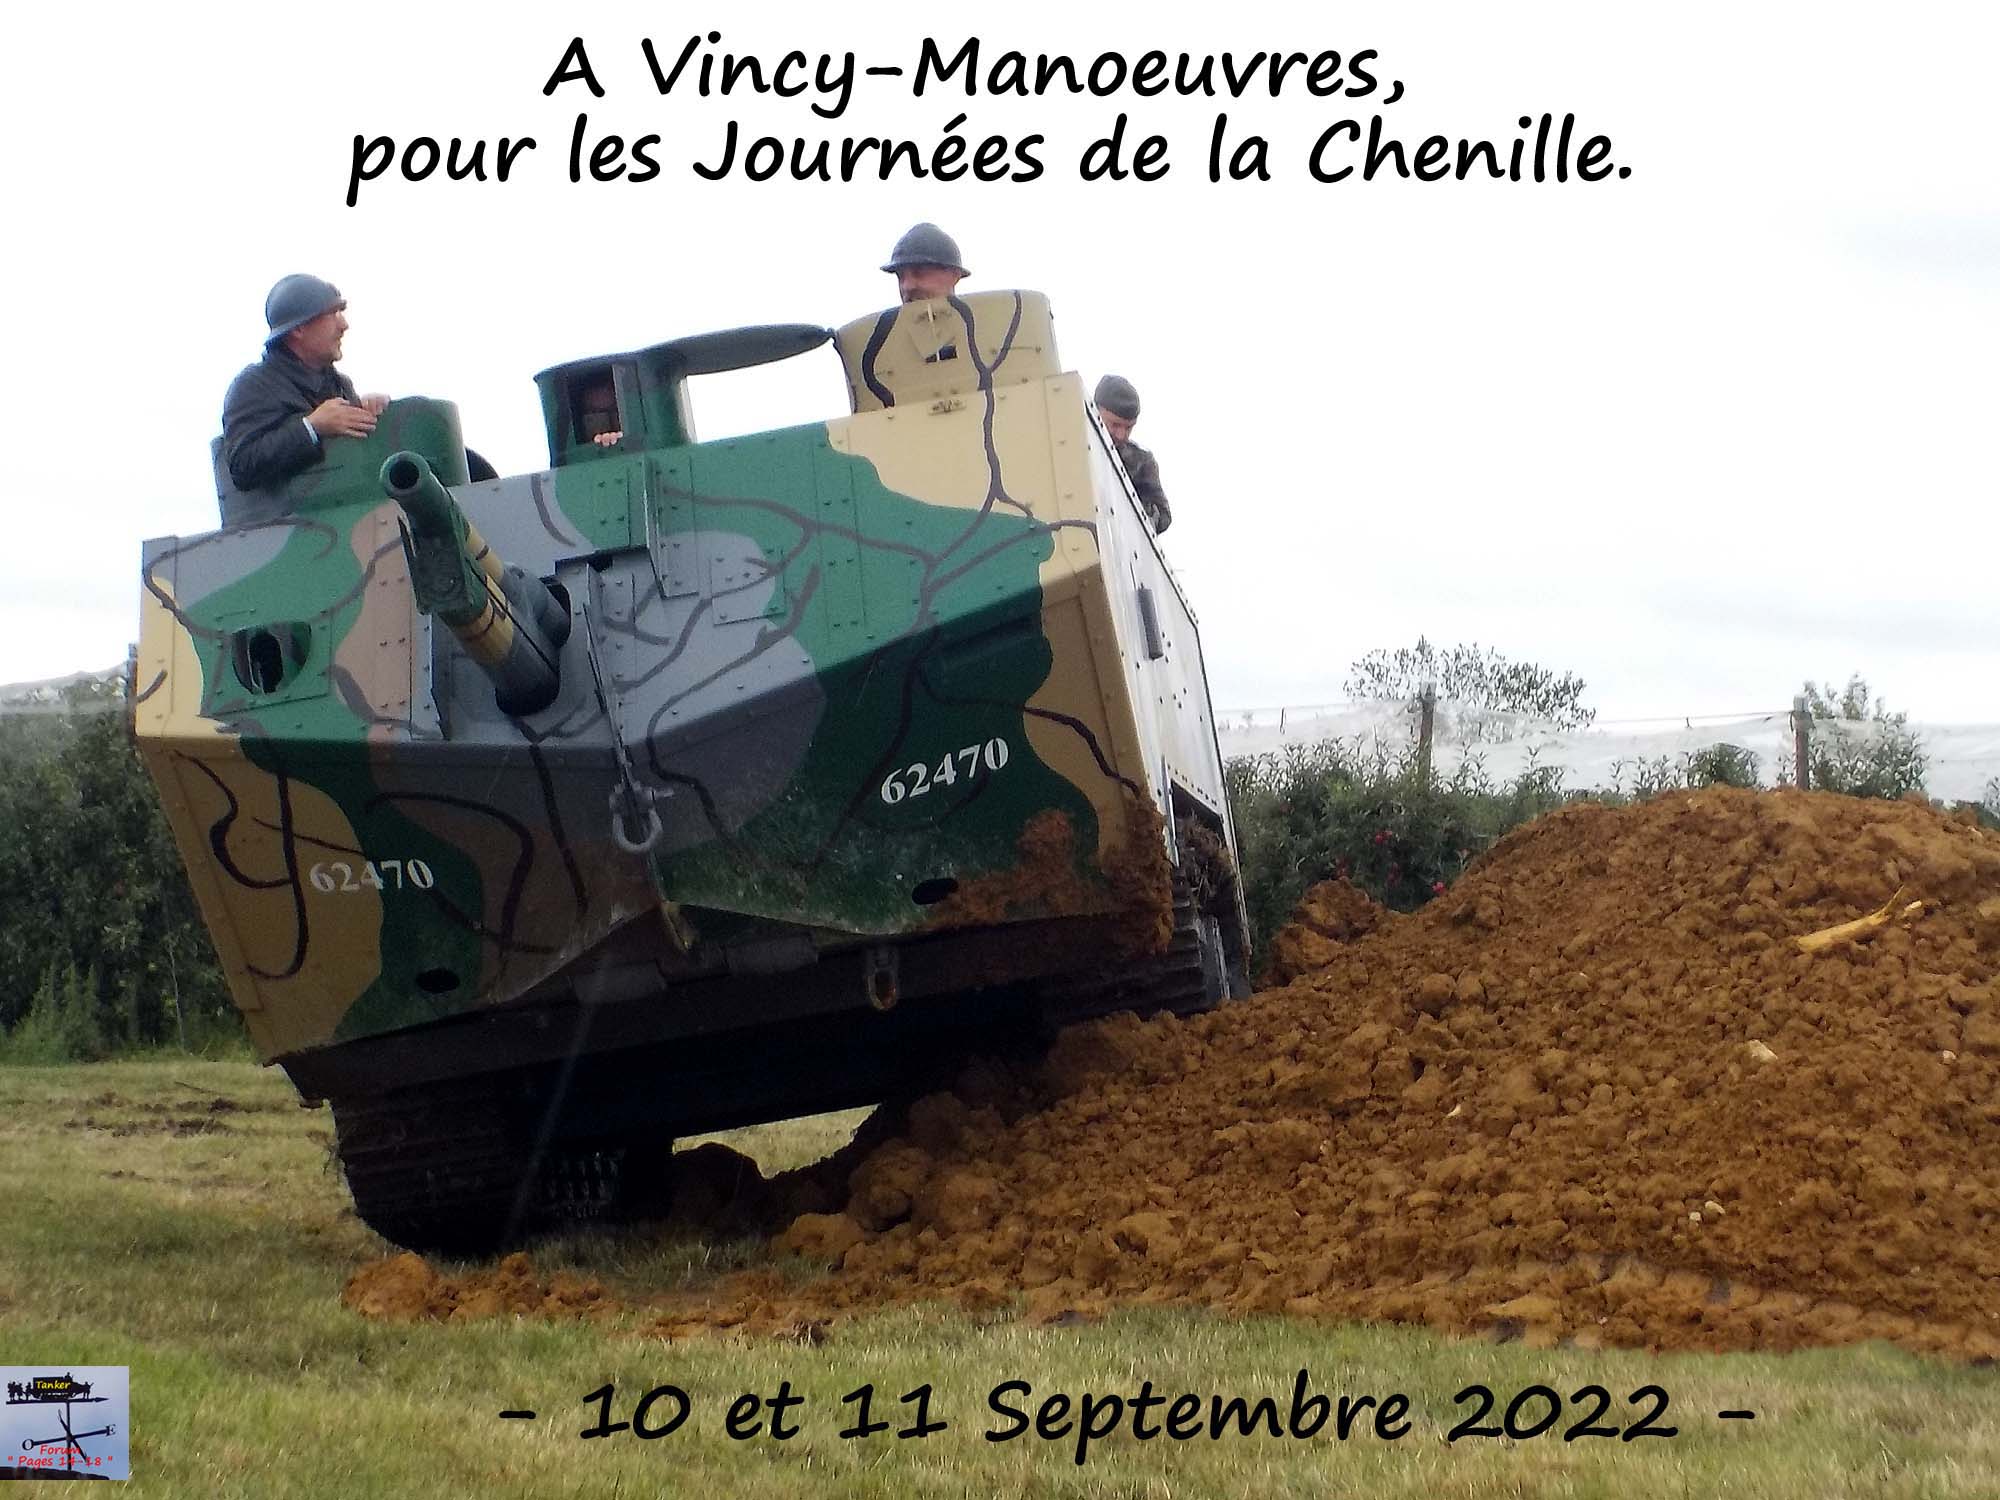 220910 - Journées de la Chenille à Vincy-Manoeures (01a).jpg